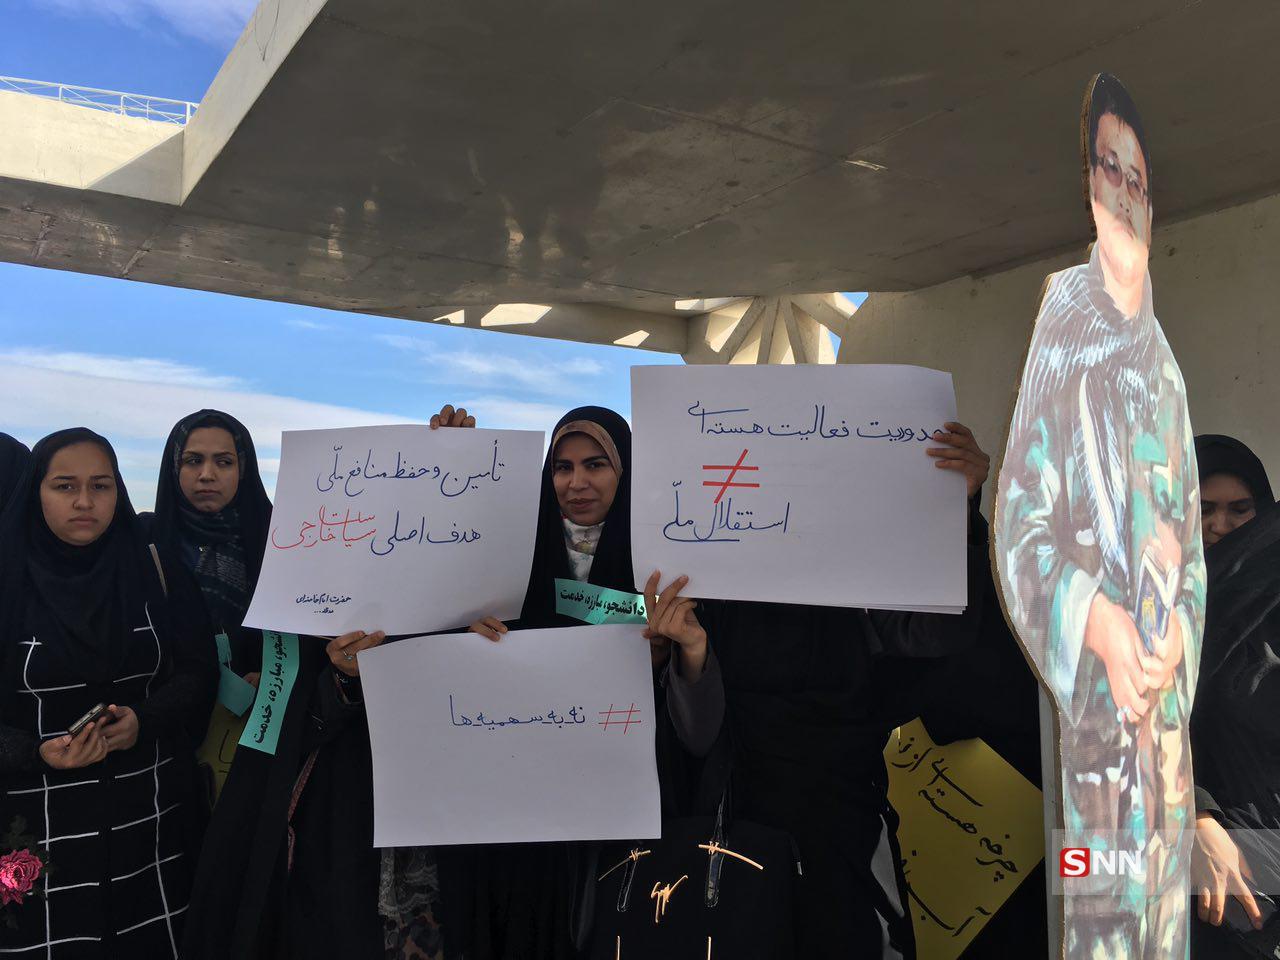 دانشجویان مشهدی در روز دانشجو برای استکبار جهانی خط و نشان کشیدند/سلبریتی ها چرا در برابر اتفاقات فرانسه سکوت کردند؟!